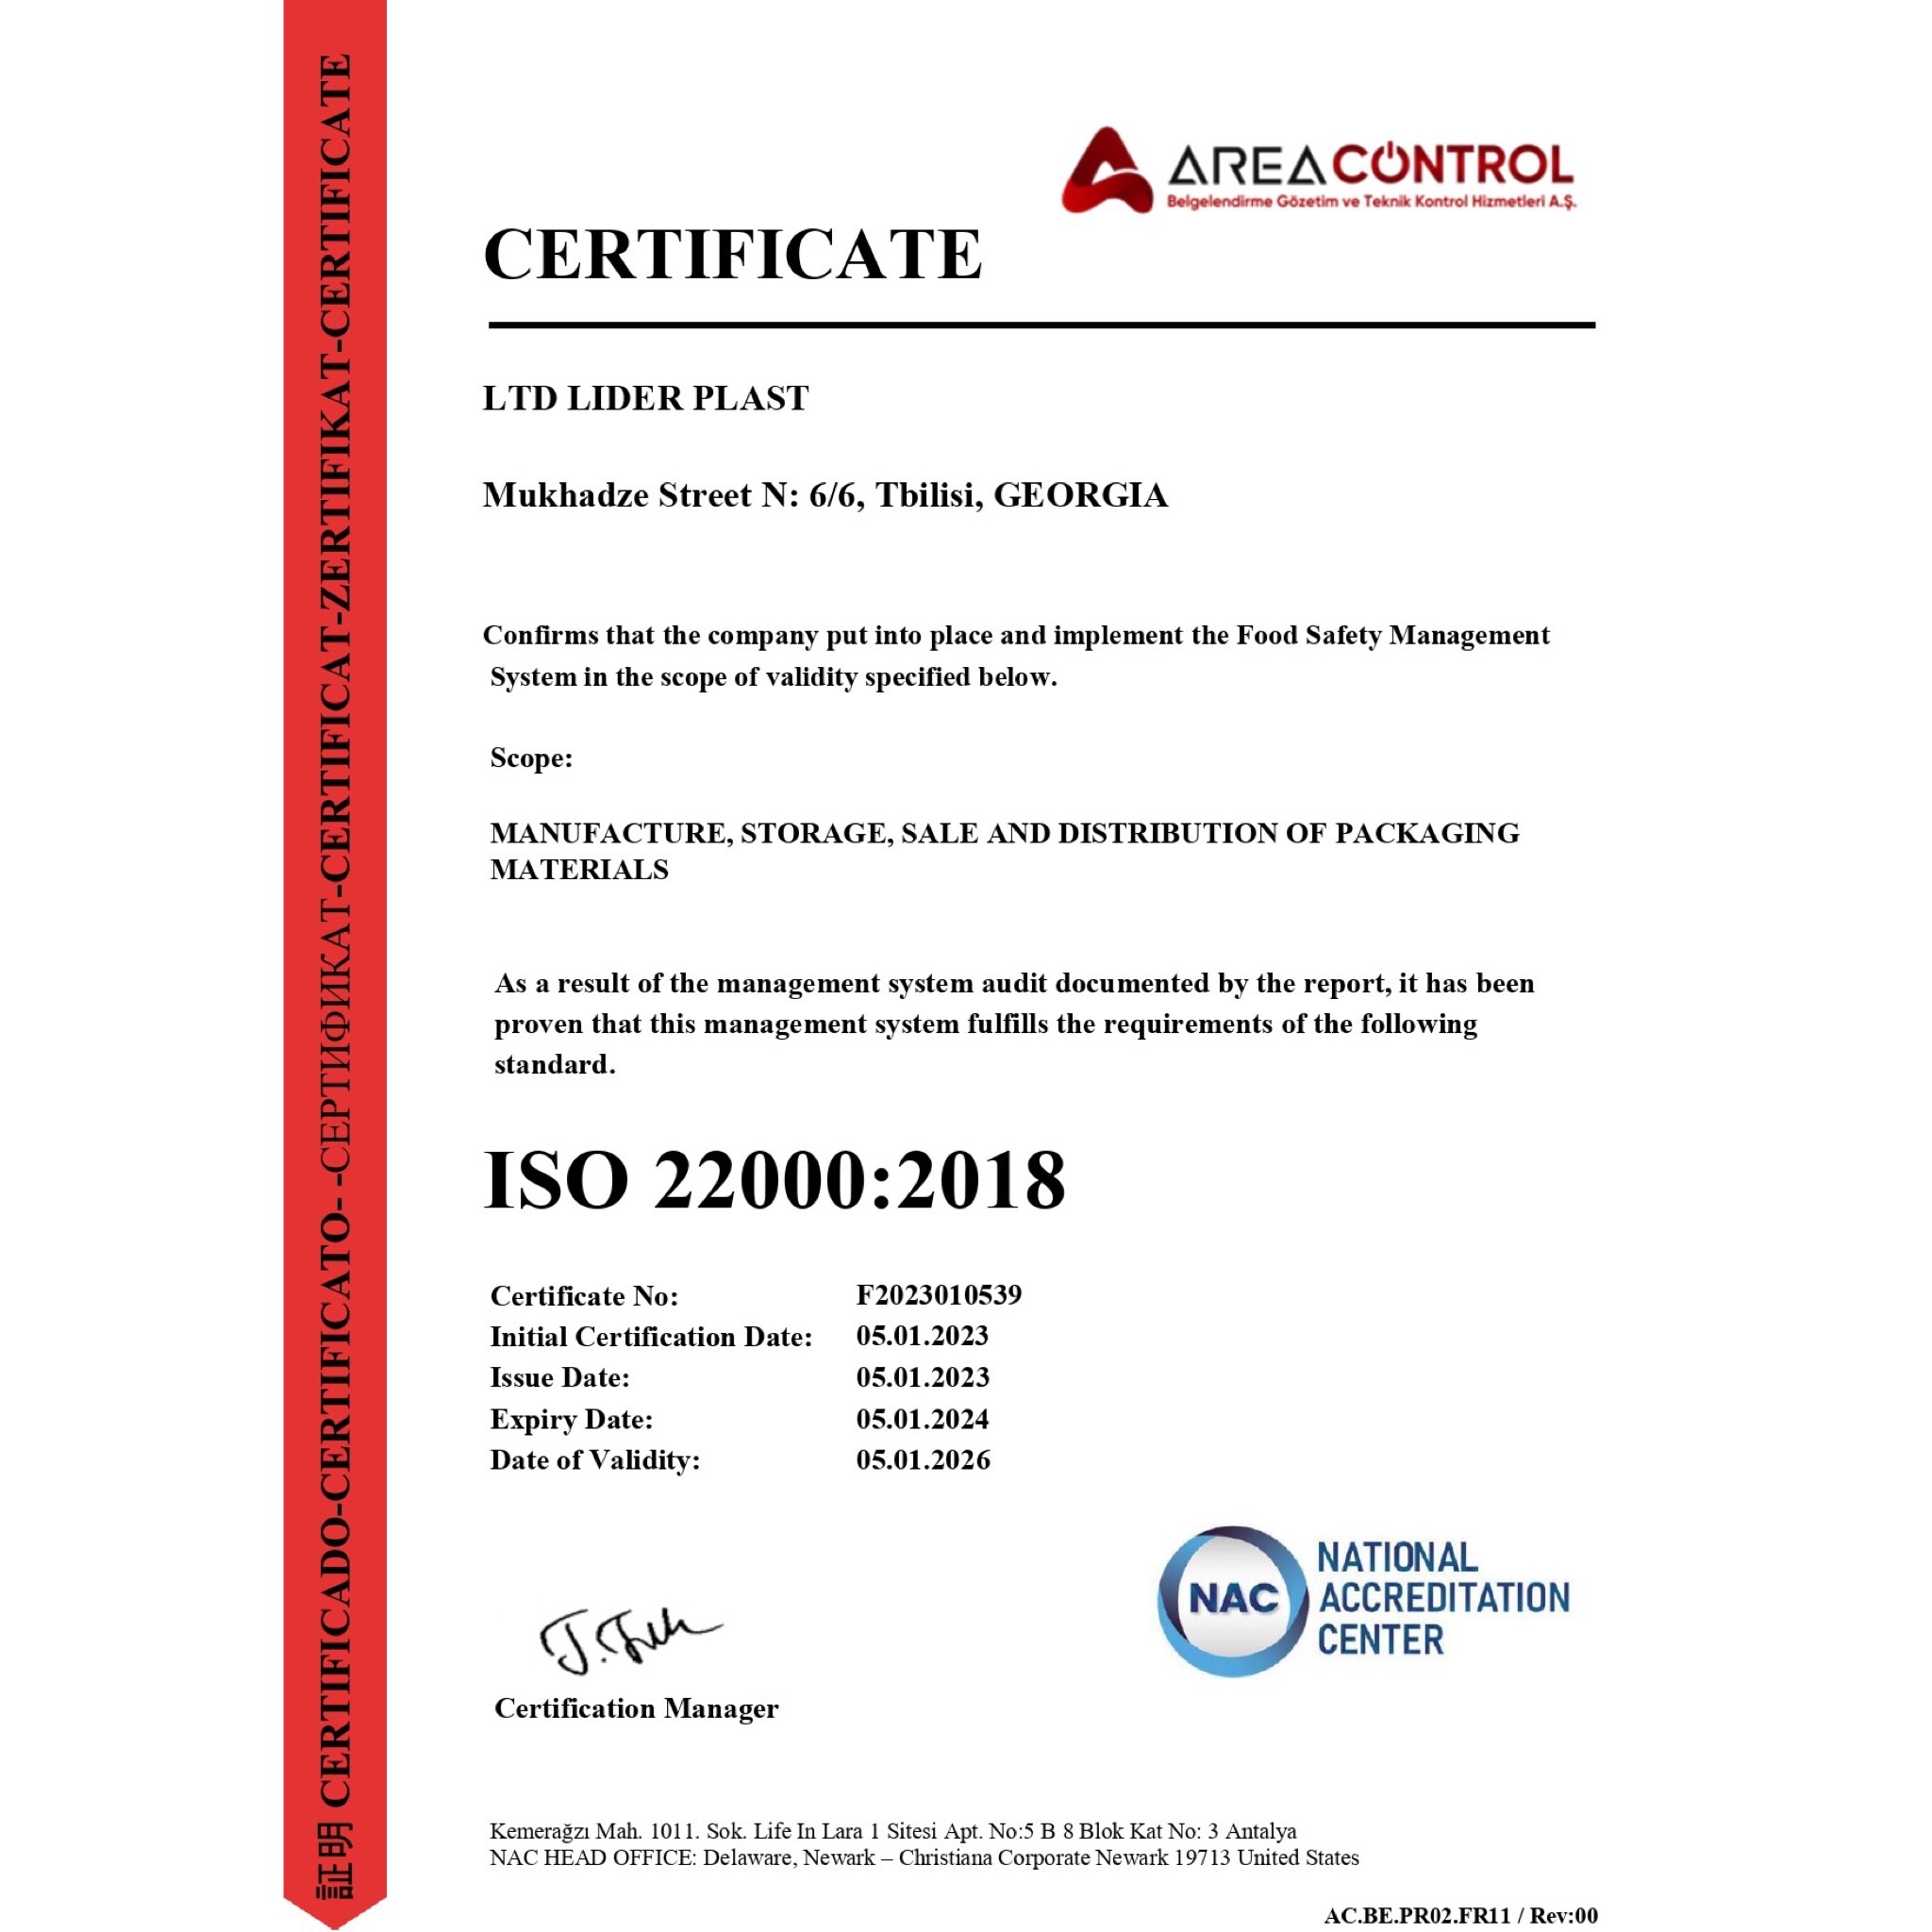 ISO 22000:2018-ის სერტიფიცირება შპს "ლიდერპლასტში"